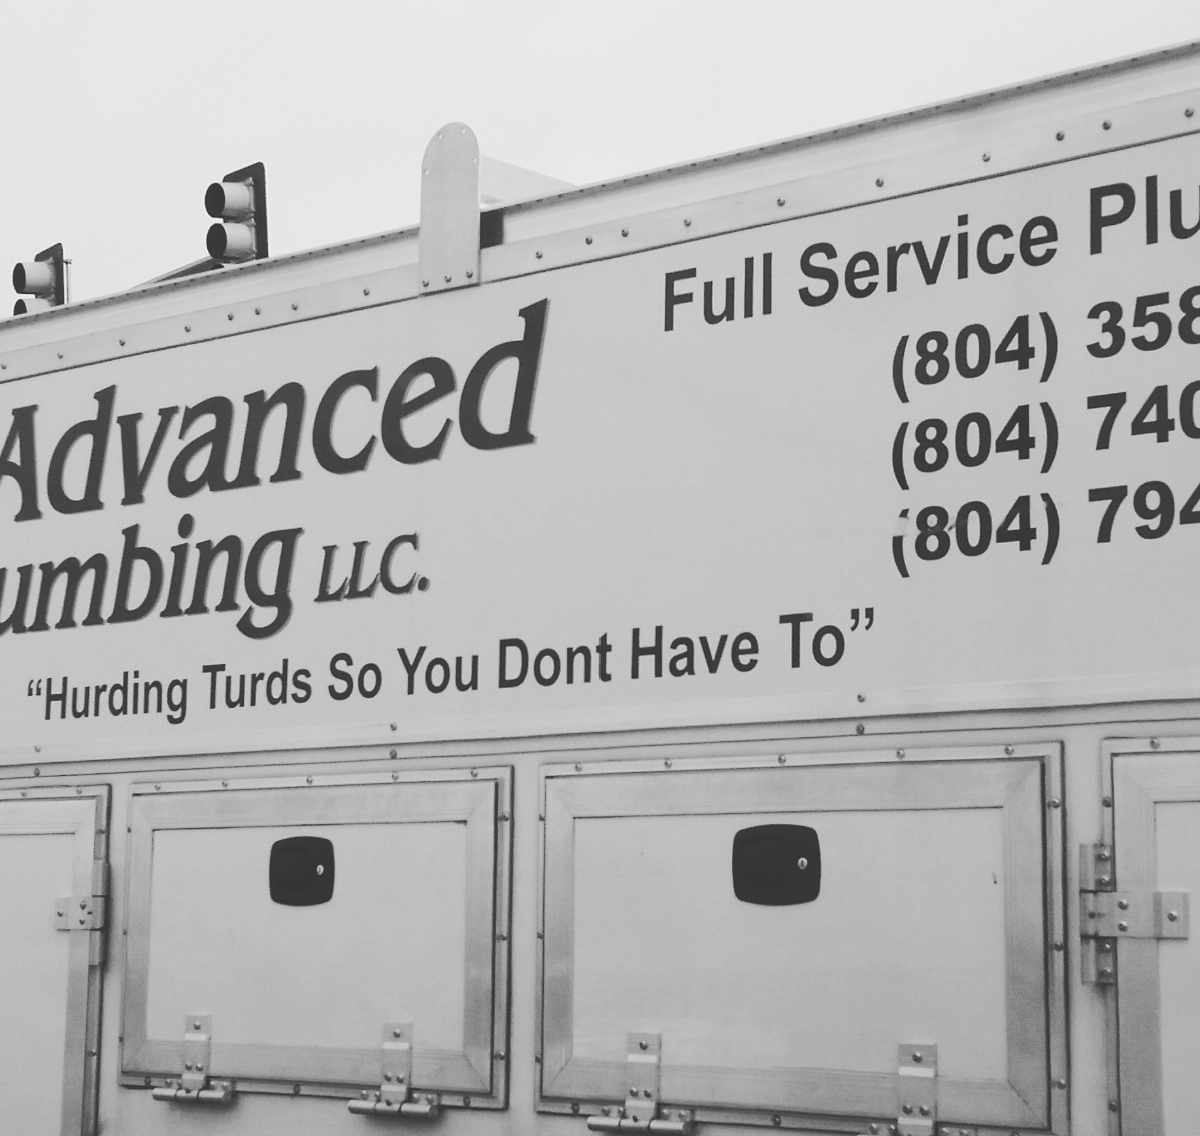 This plumbing slogan